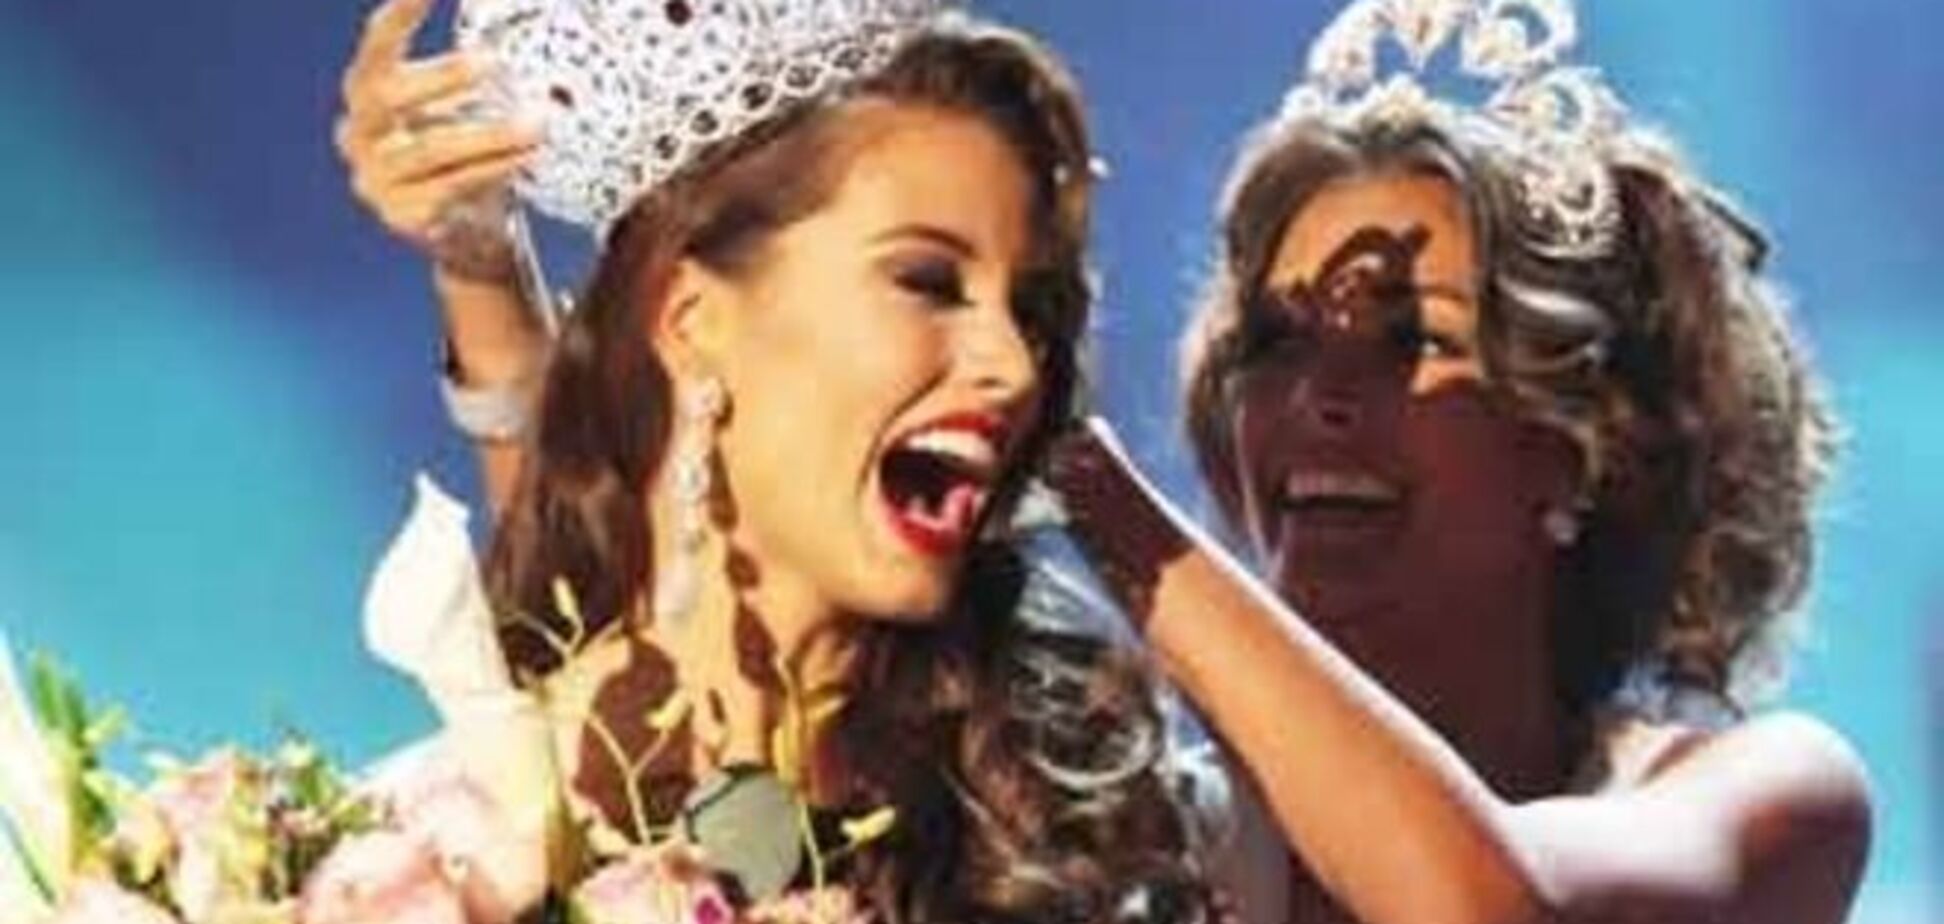 Фото победительниц 'Мисс Вселенная': как изменились стандарты красоты за 60 лет